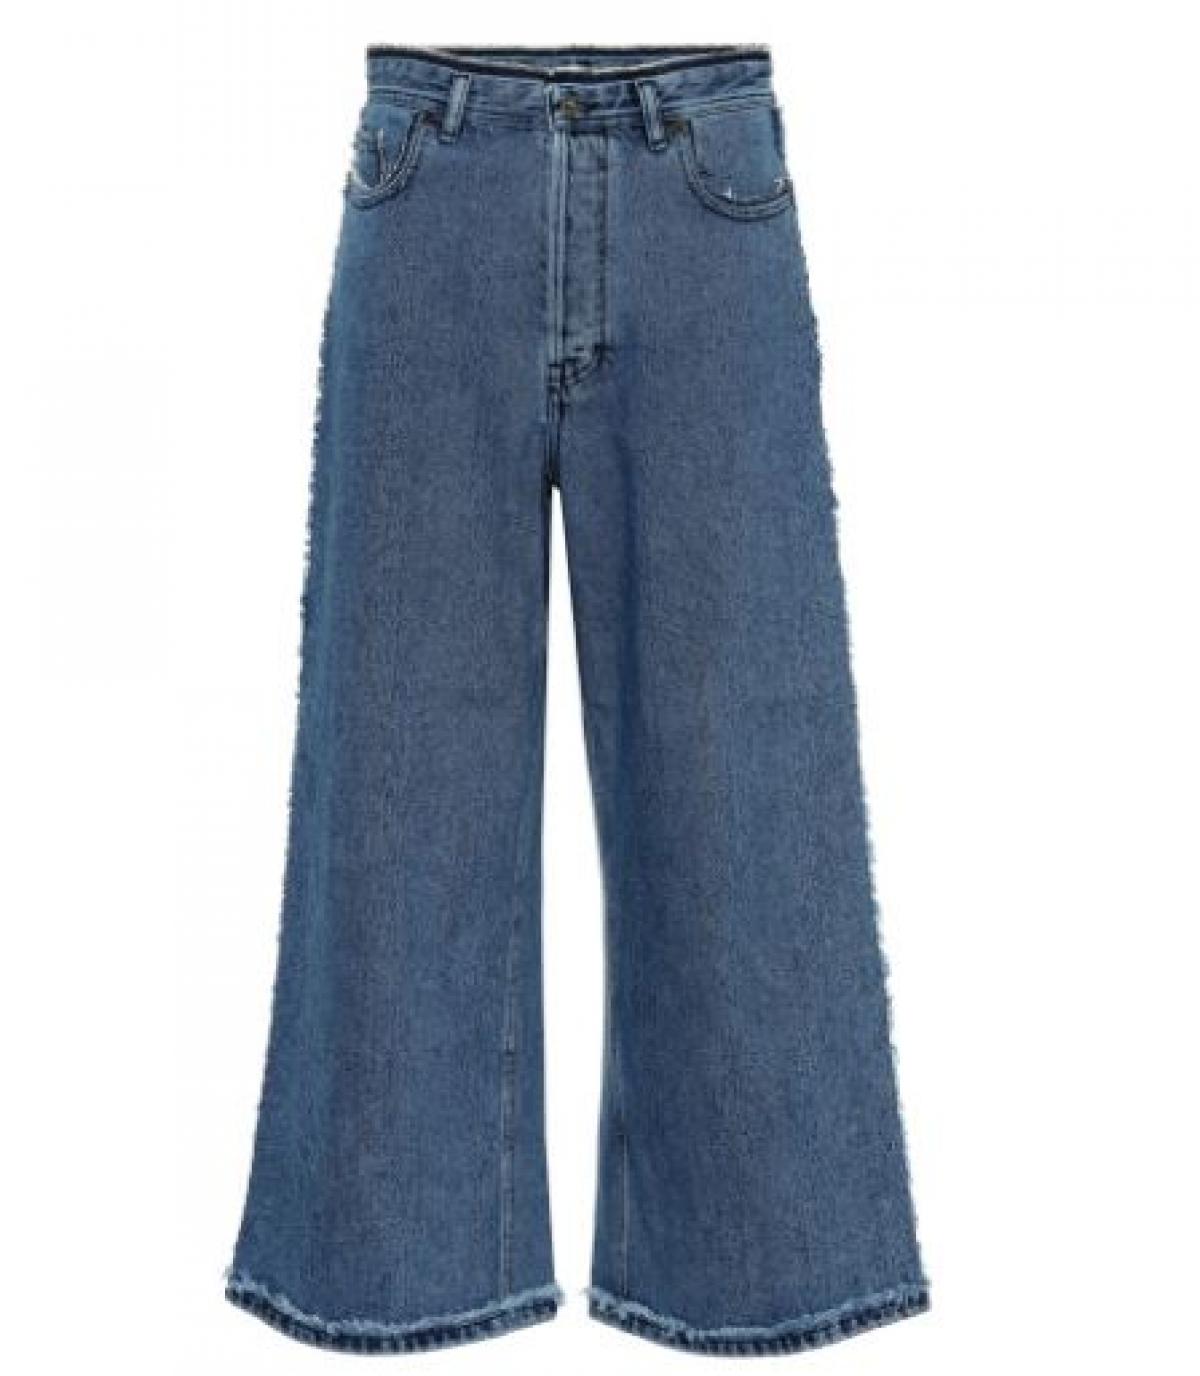 Trend 3: über-oversized jeans